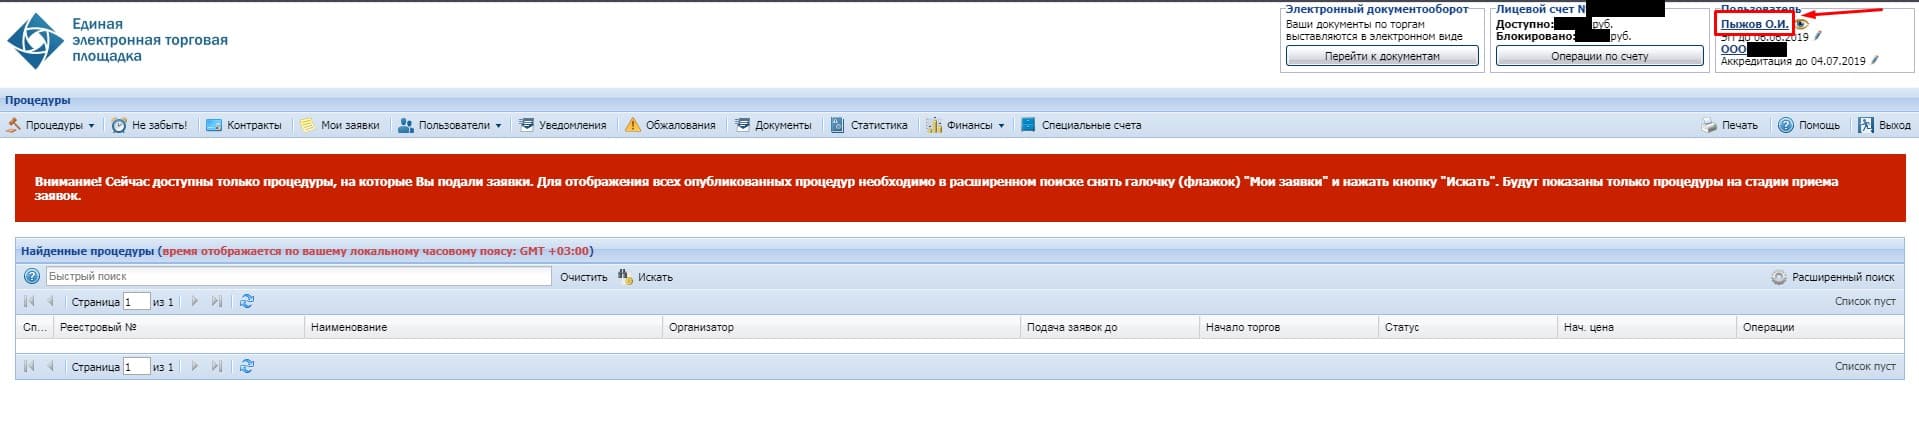 Вход в личный кабинет на pgu.mos.ru, регистрация